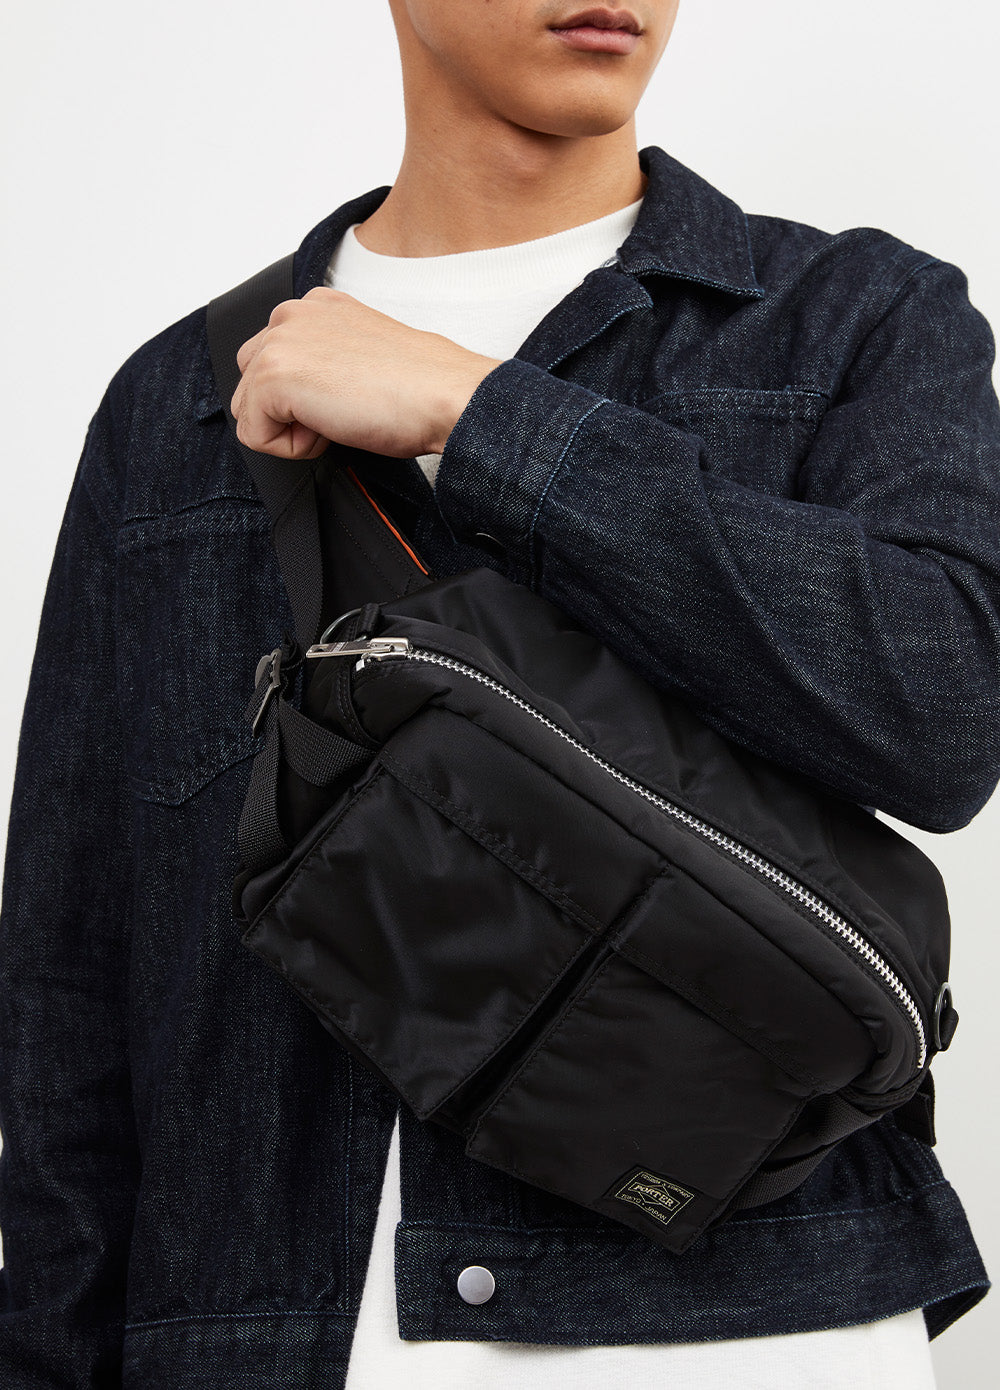 Porter-Yoshida & Co. Tanker Waist Bag in Black